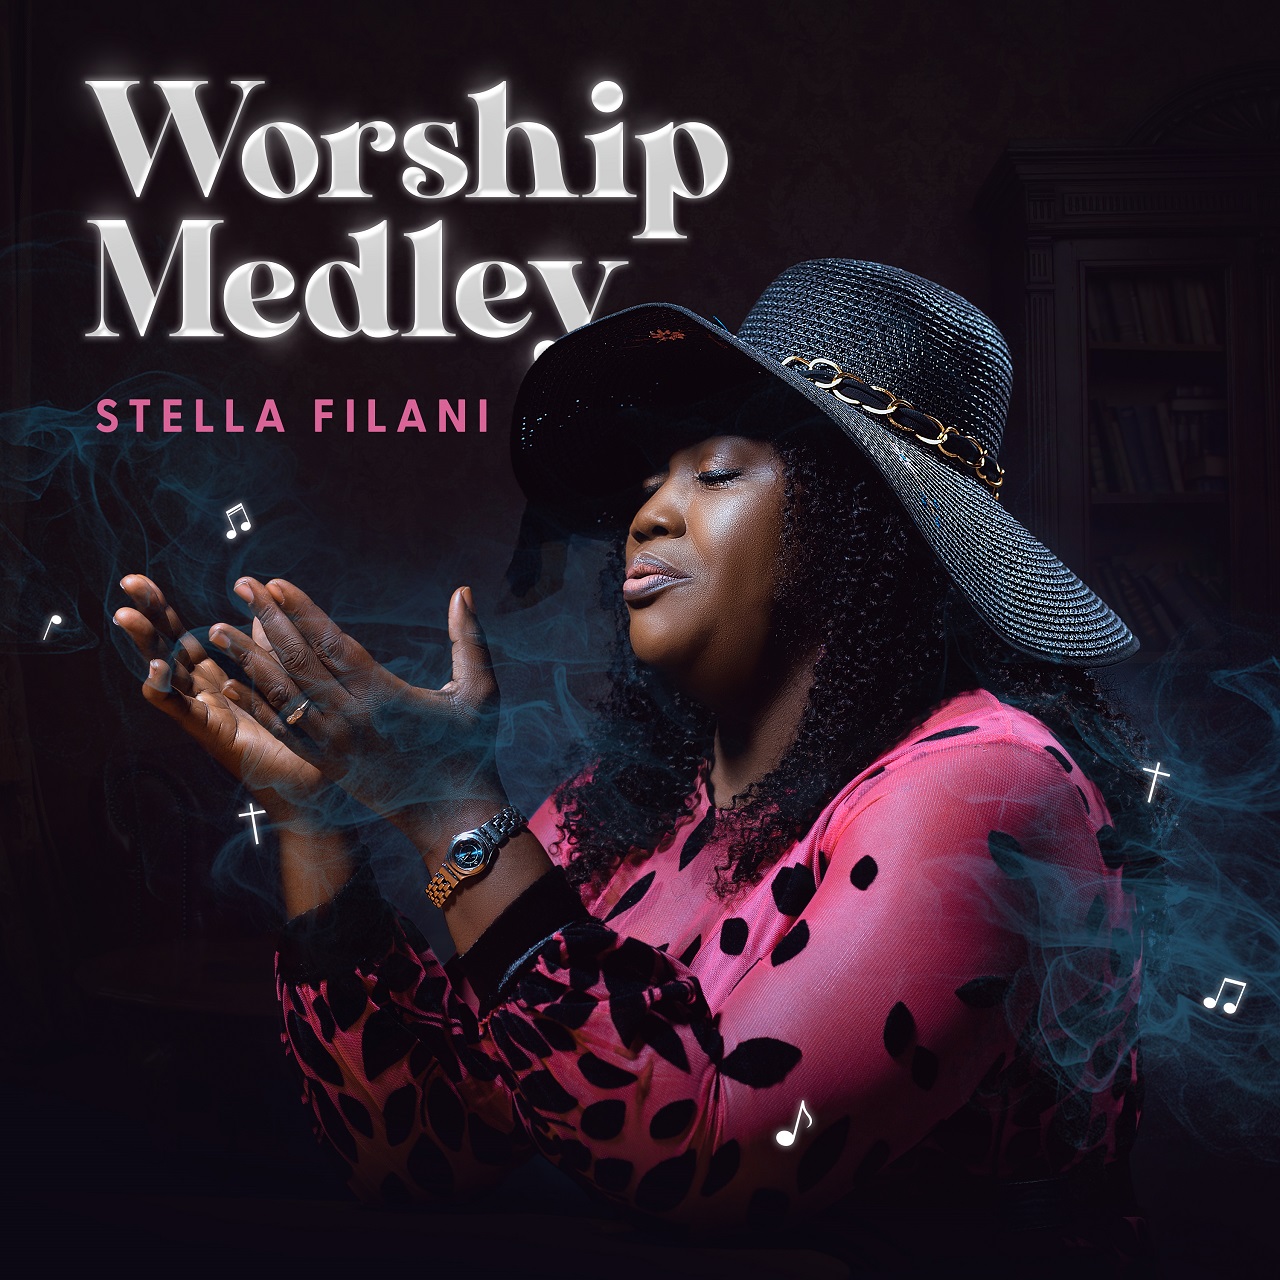 Worship-medlye-stella-filani